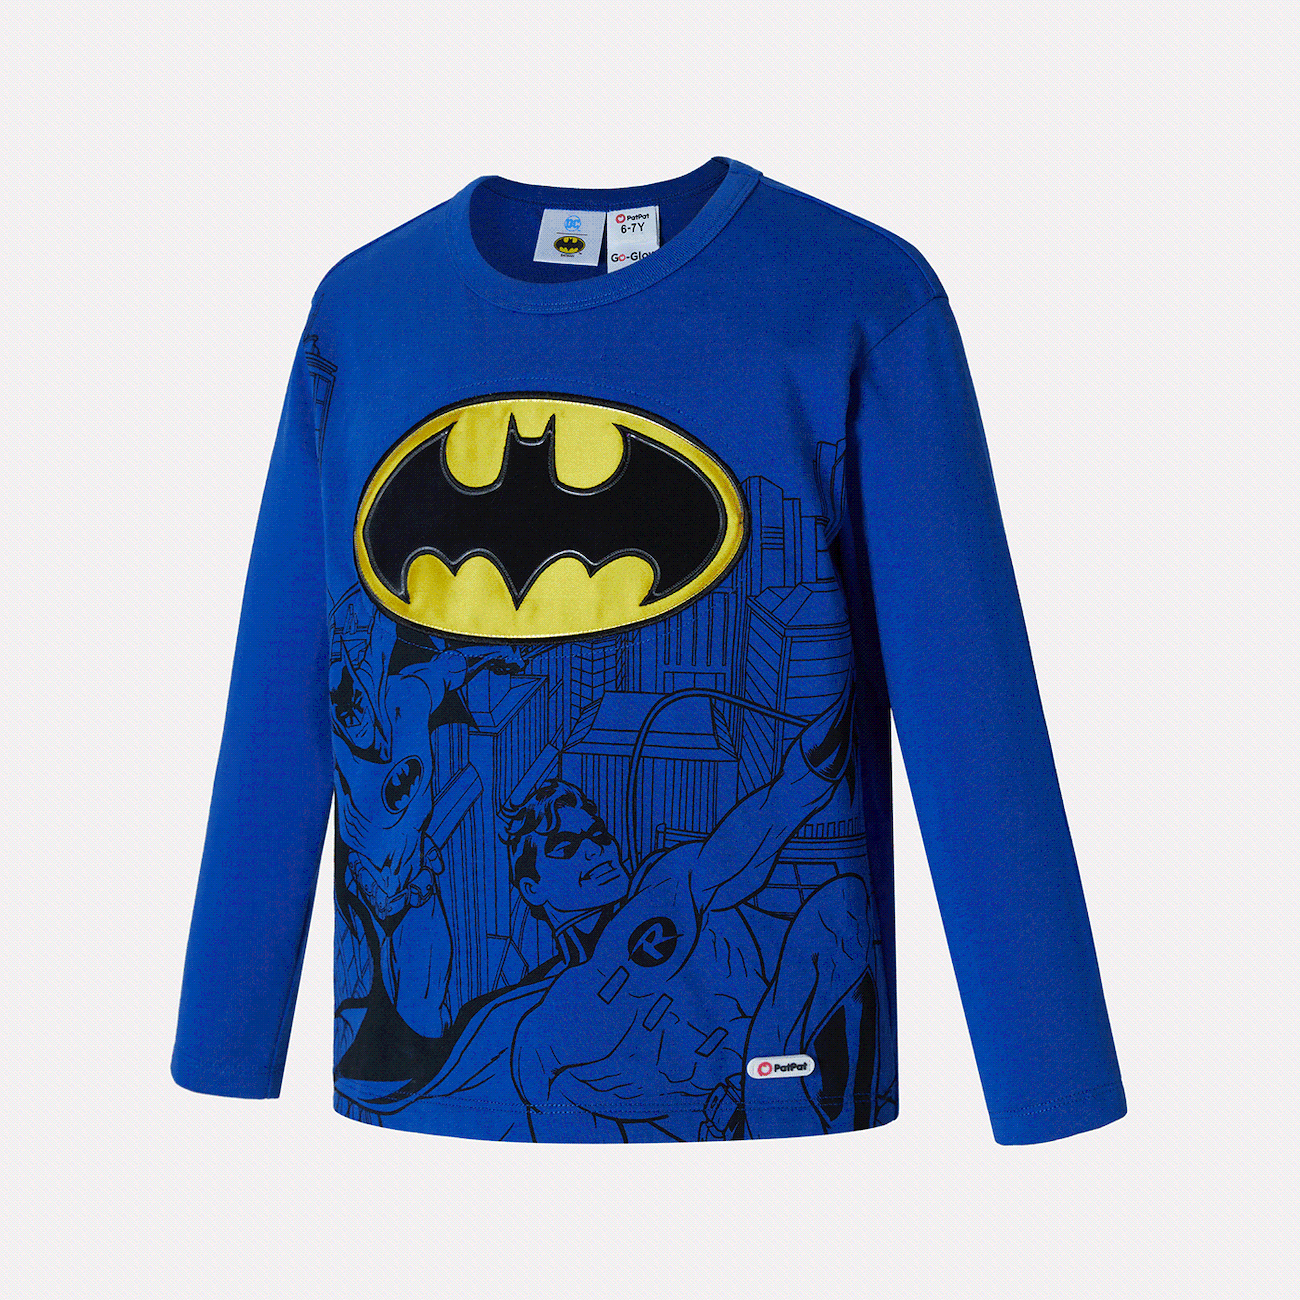 Go-Glow Leuchtendes blaues Sweatshirt mit leuchtendem Batman-Muster blau big image 1